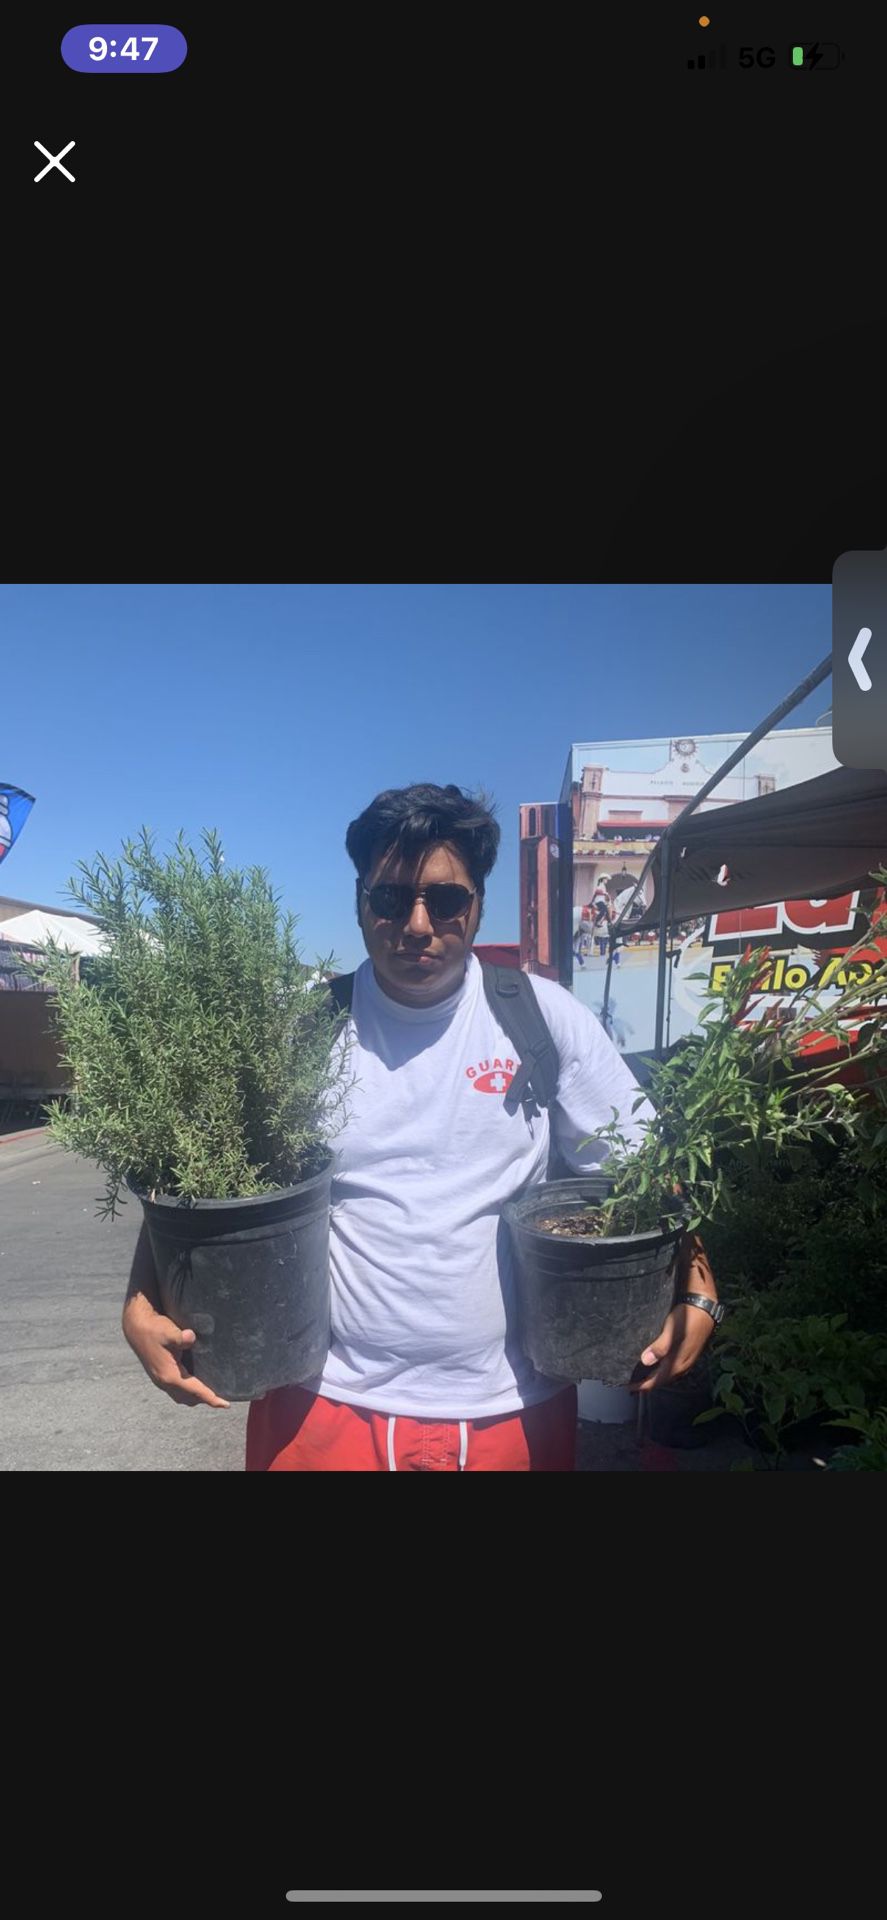 Plants 4 Sale